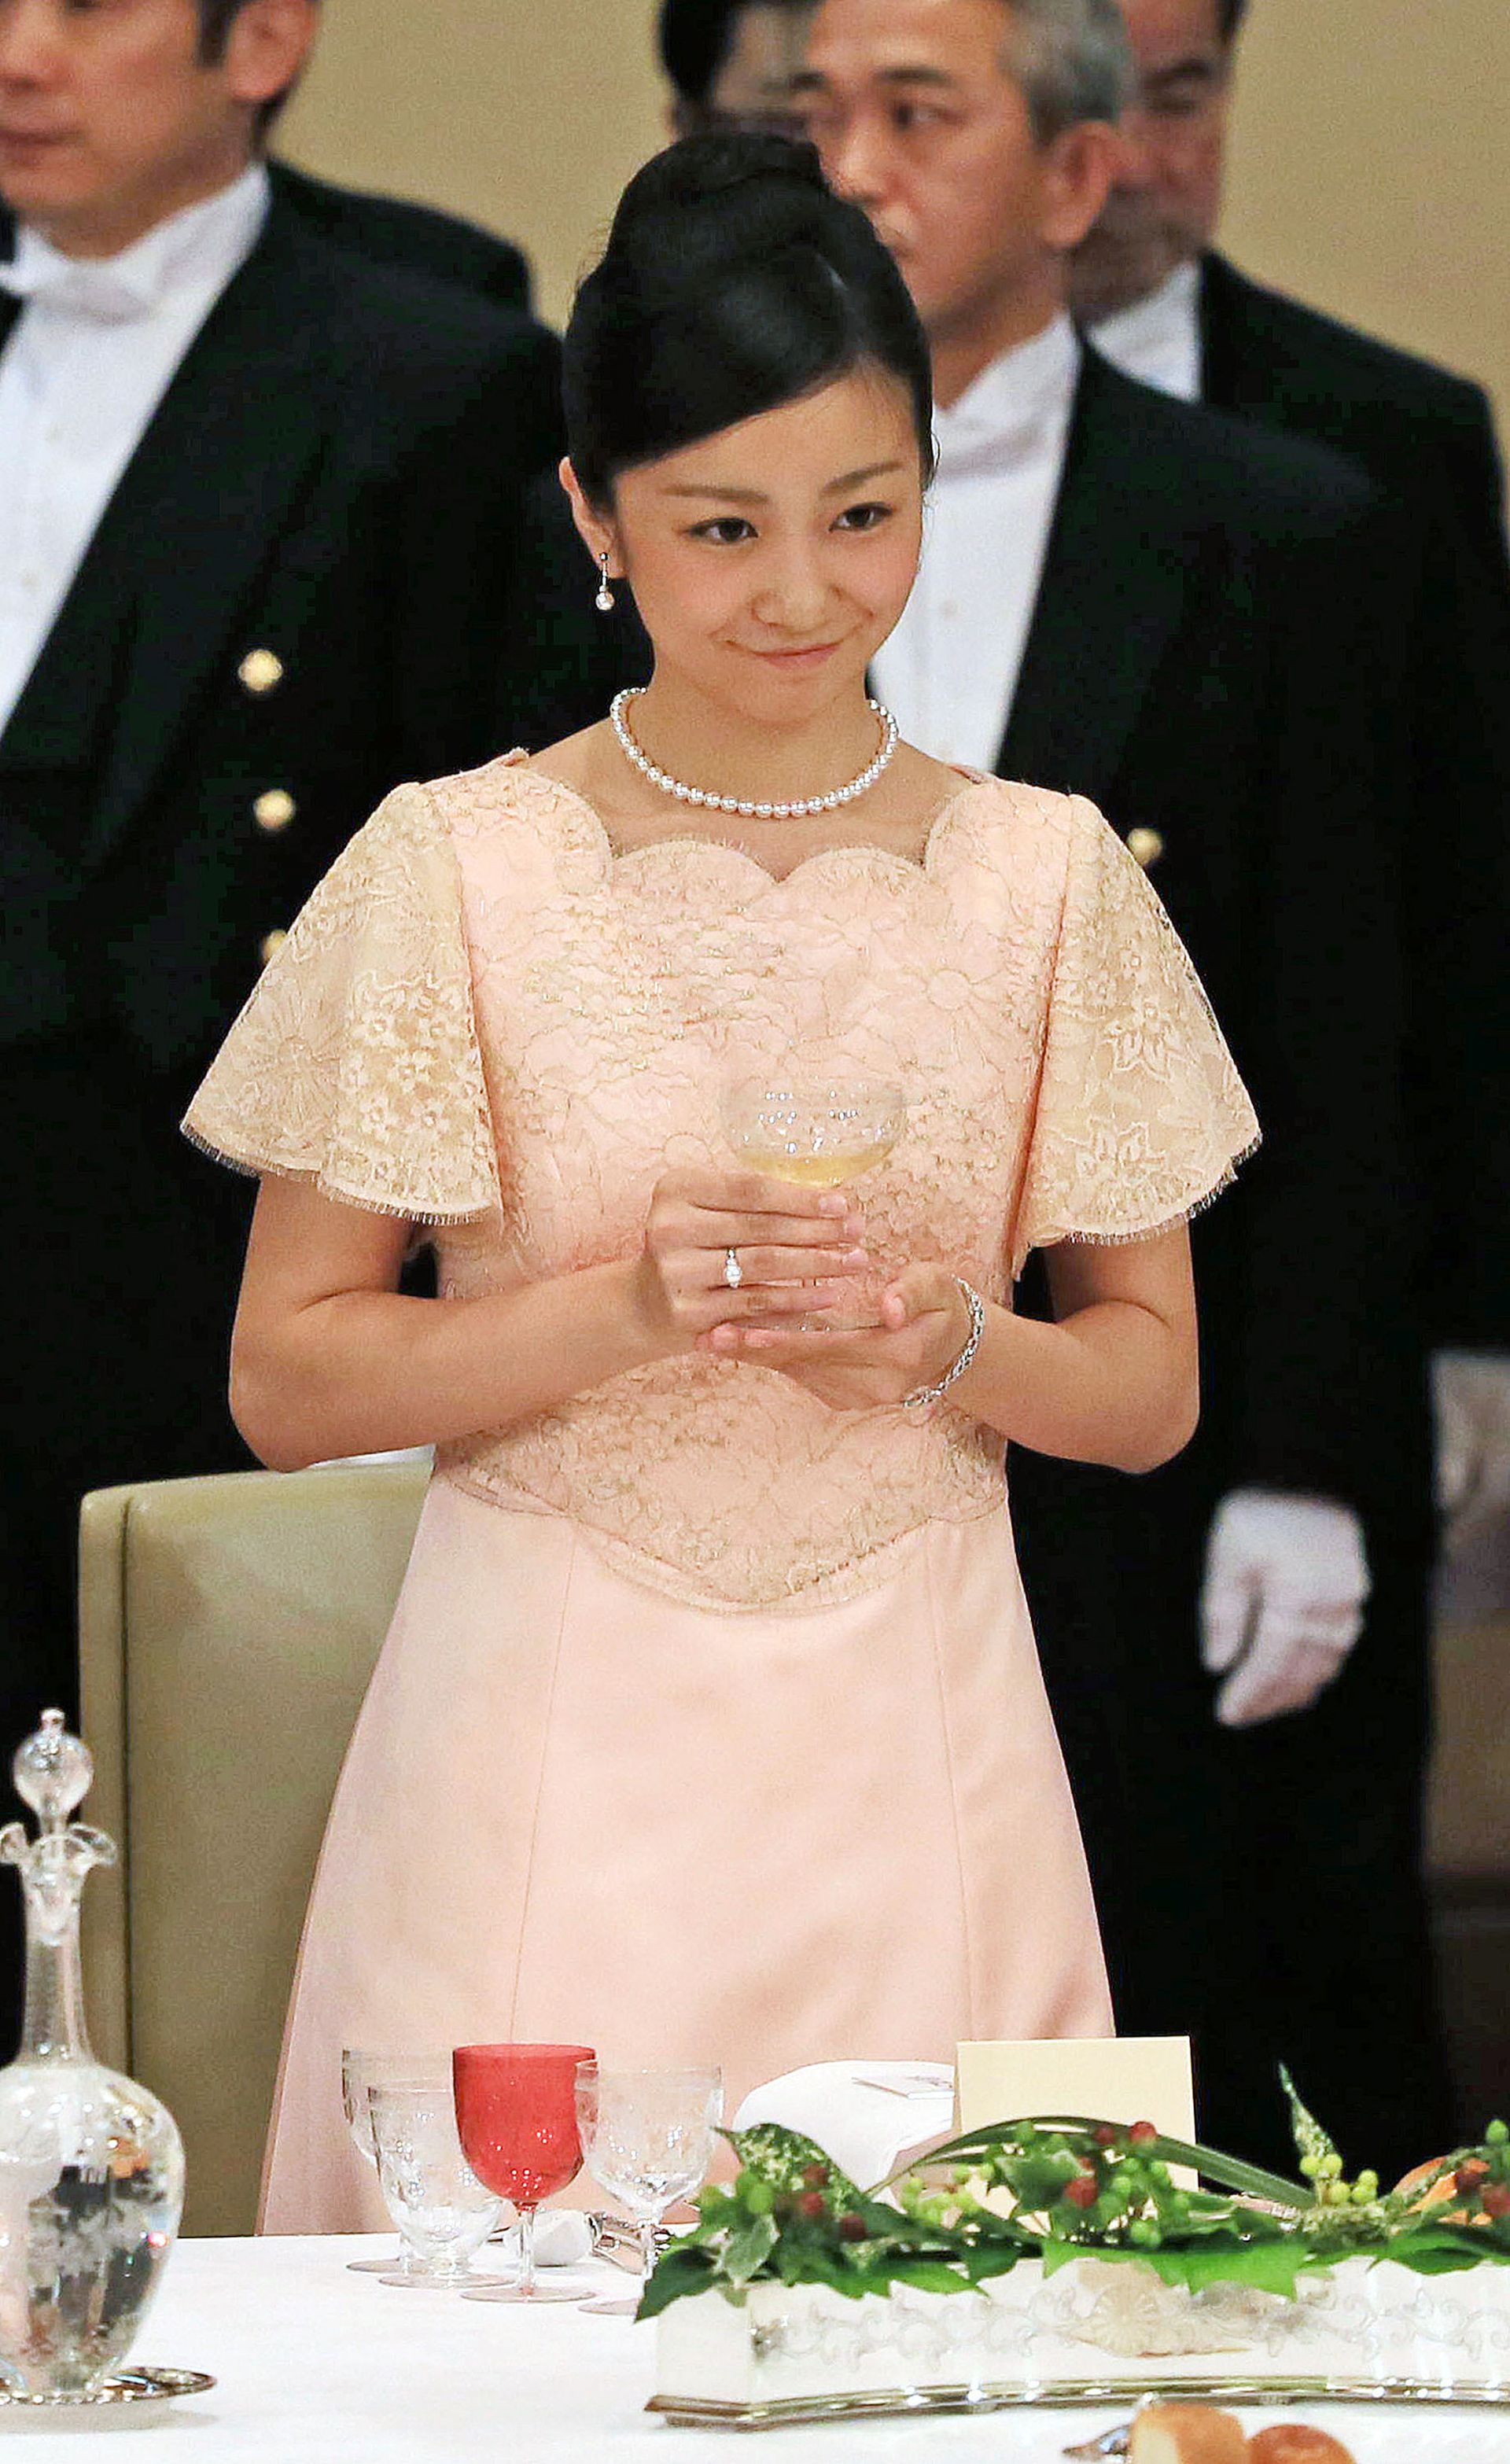 身为日本皇室，佳子公主在学时期亦需要处理皇族公务，例如2016年9月她前往了鸟取县“全国高校生手语表演甲子园大会”，使用纯熟的手语作开幕致辞。图为佳子公主2015年6月3日出席日皇欢迎到访日本的时任菲律宾总统阿基诺的晚宴。（VCG）